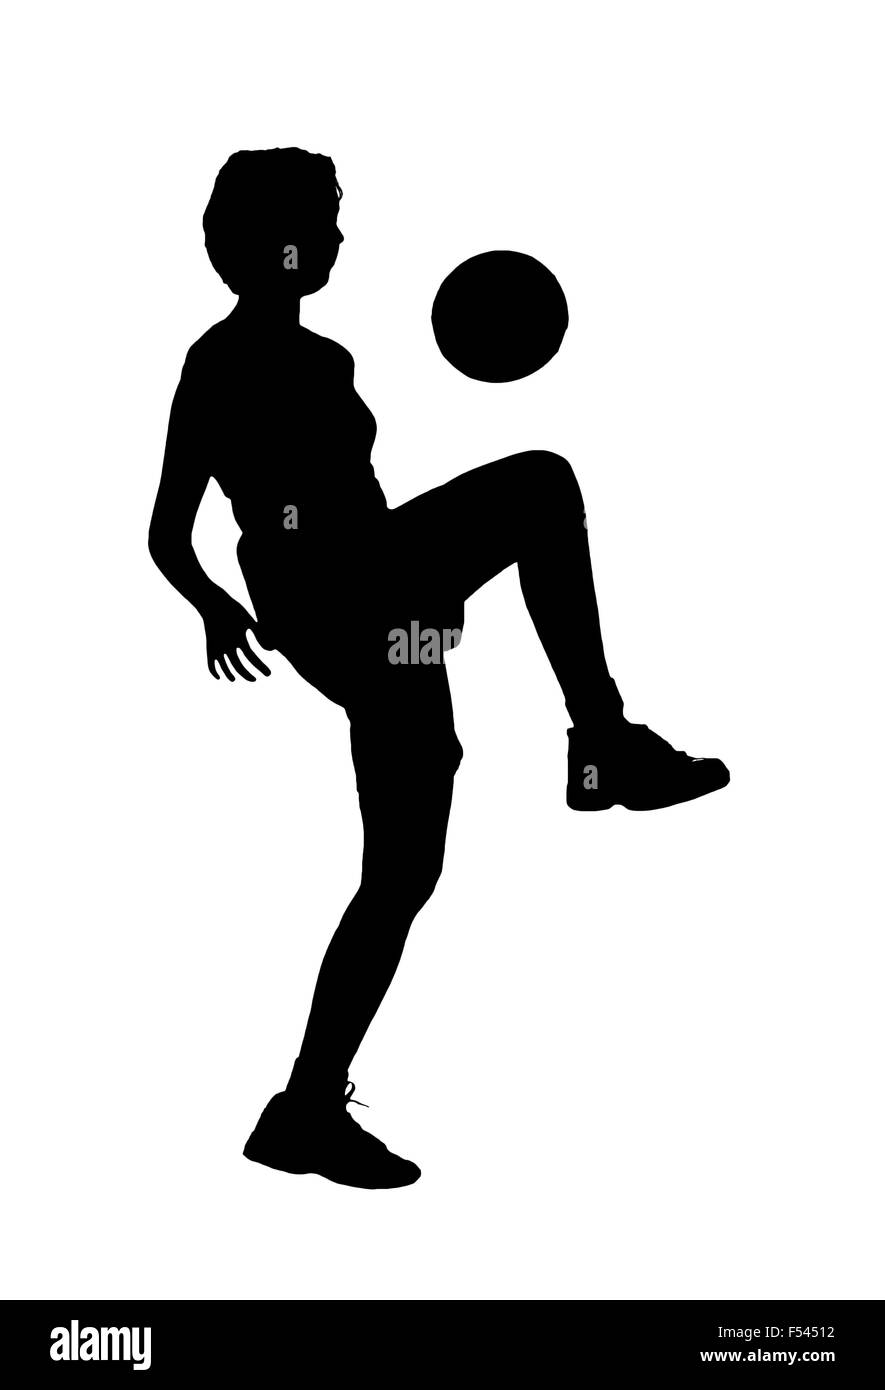 Silhouette d'une jeune fille faisant rebondir un ballon de soccer, noir sur blanc Banque D'Images